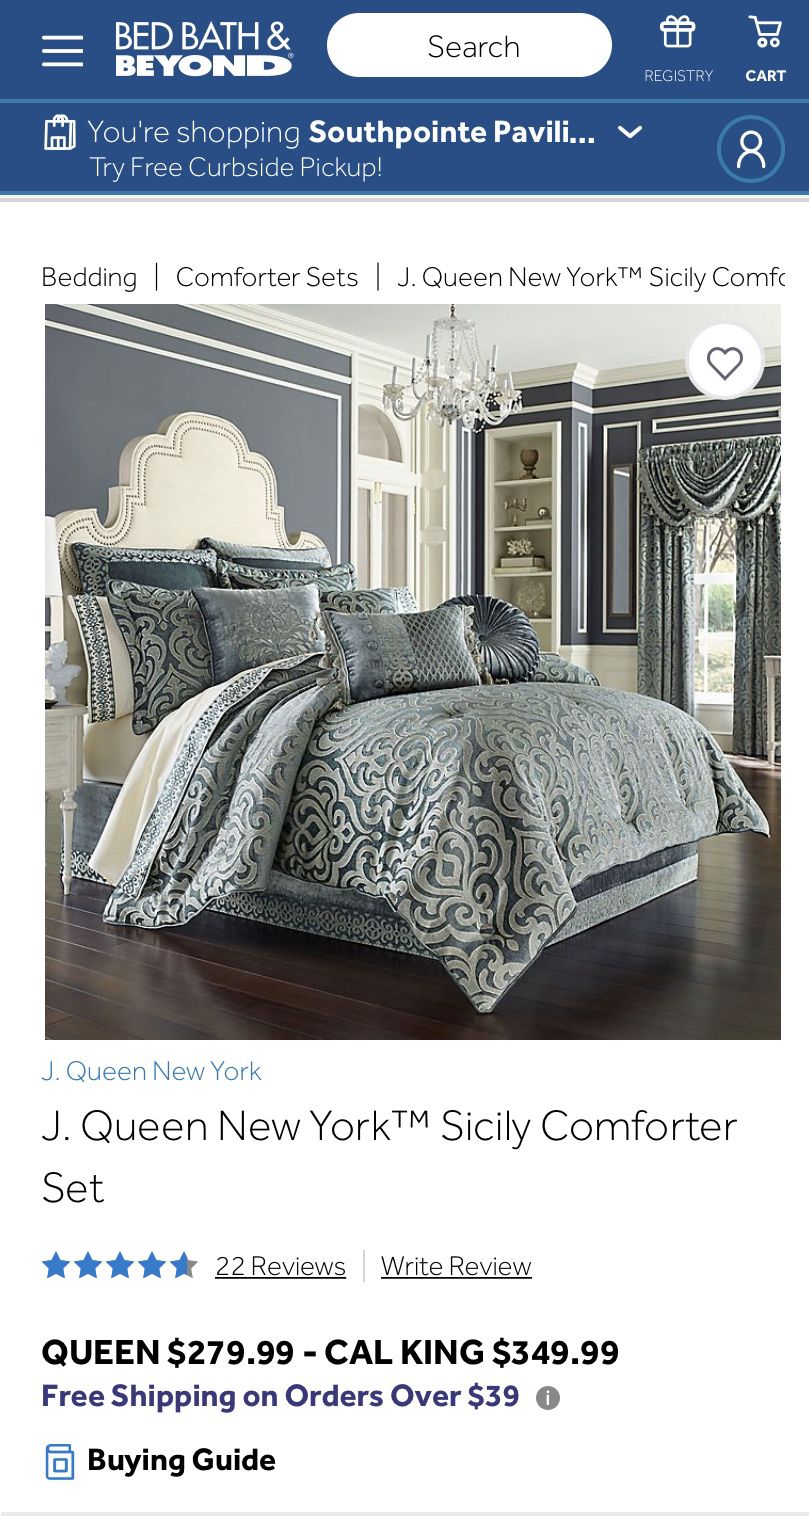 J. Queen New York bedding